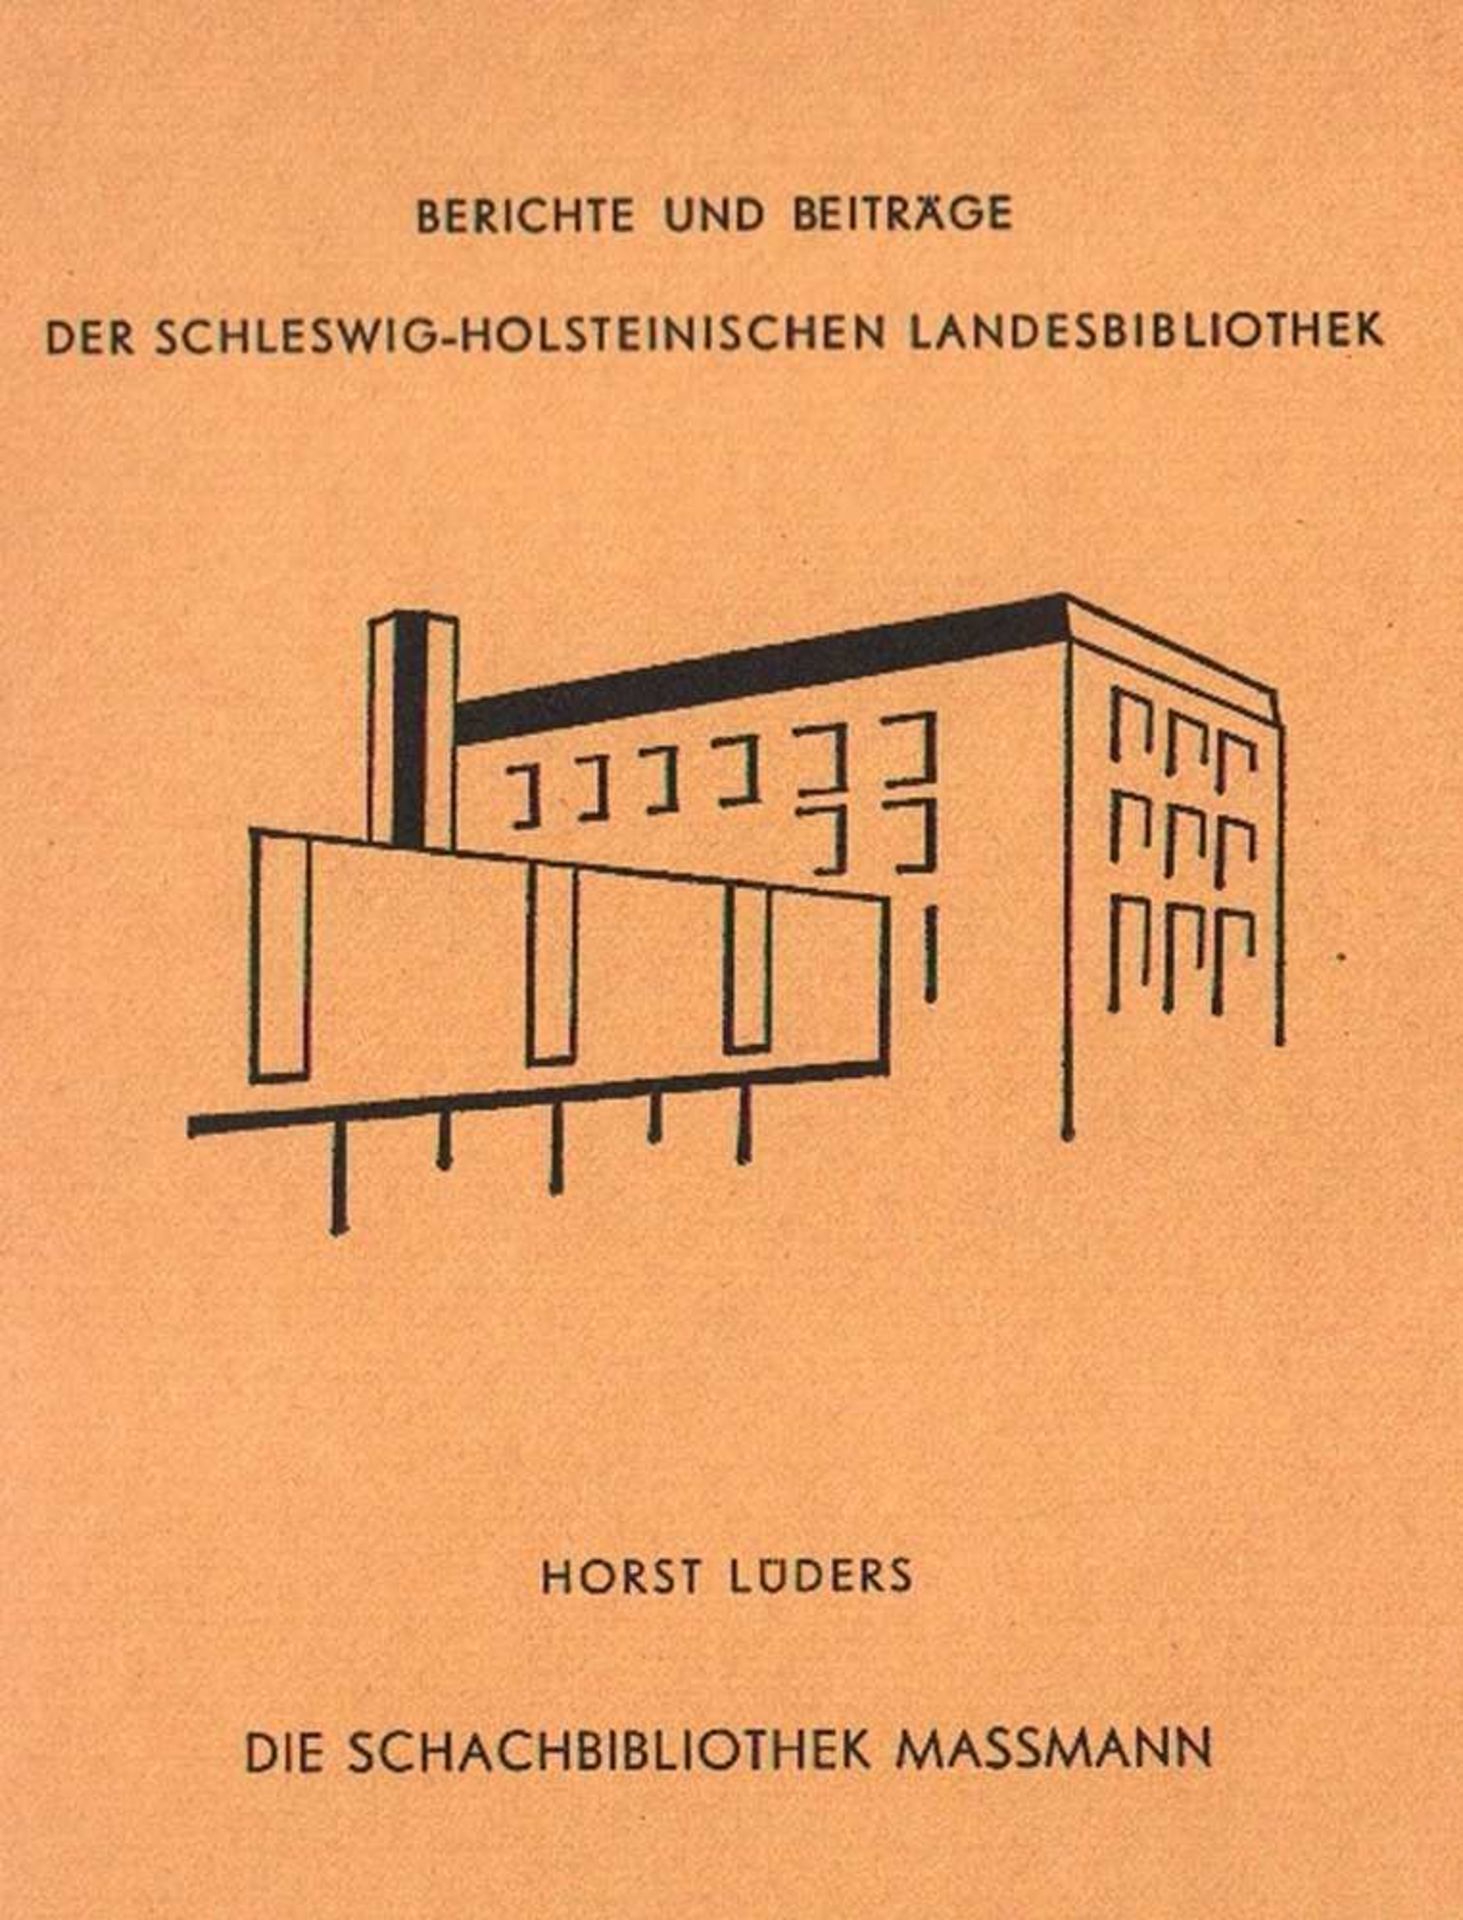 Lüders, Horst. Die Schachbibliothek Massmann. Kiel 1982. 8°. Mit 1 Tafel und 2 Diagrammen. XII,